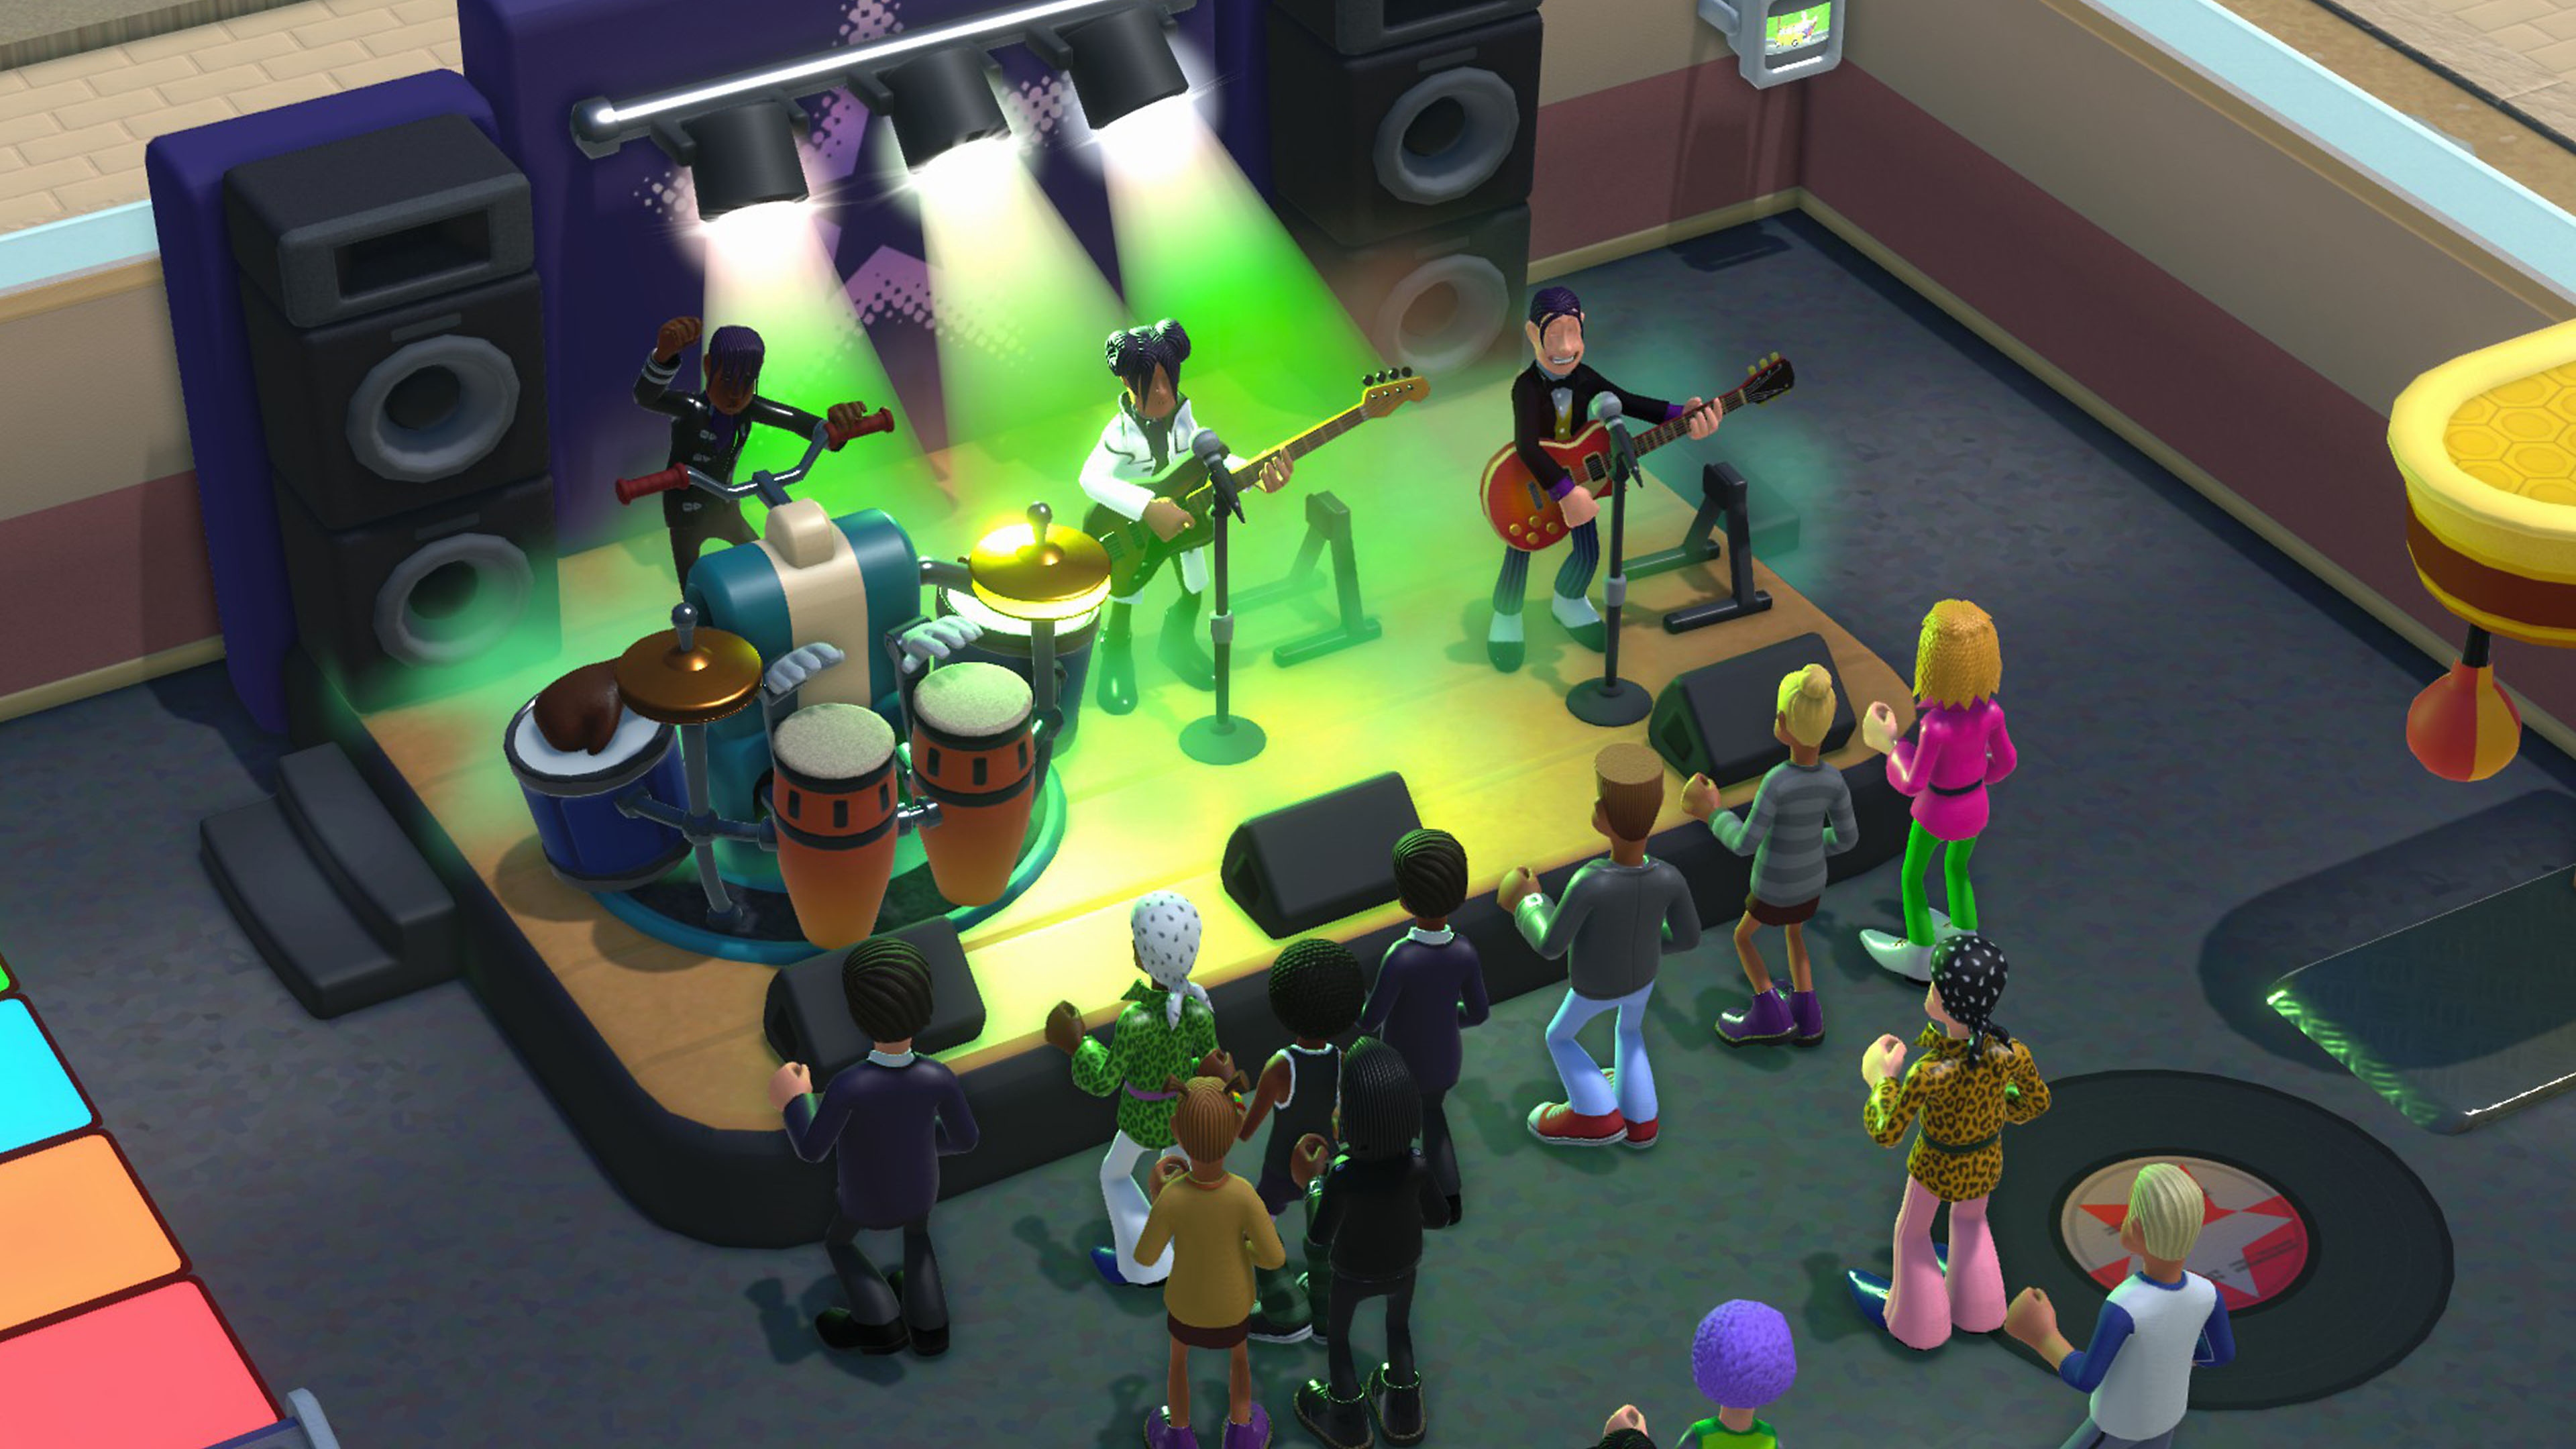 Captura de pantalla de Two Point Campus enseñando a una banda tocando en un escenario